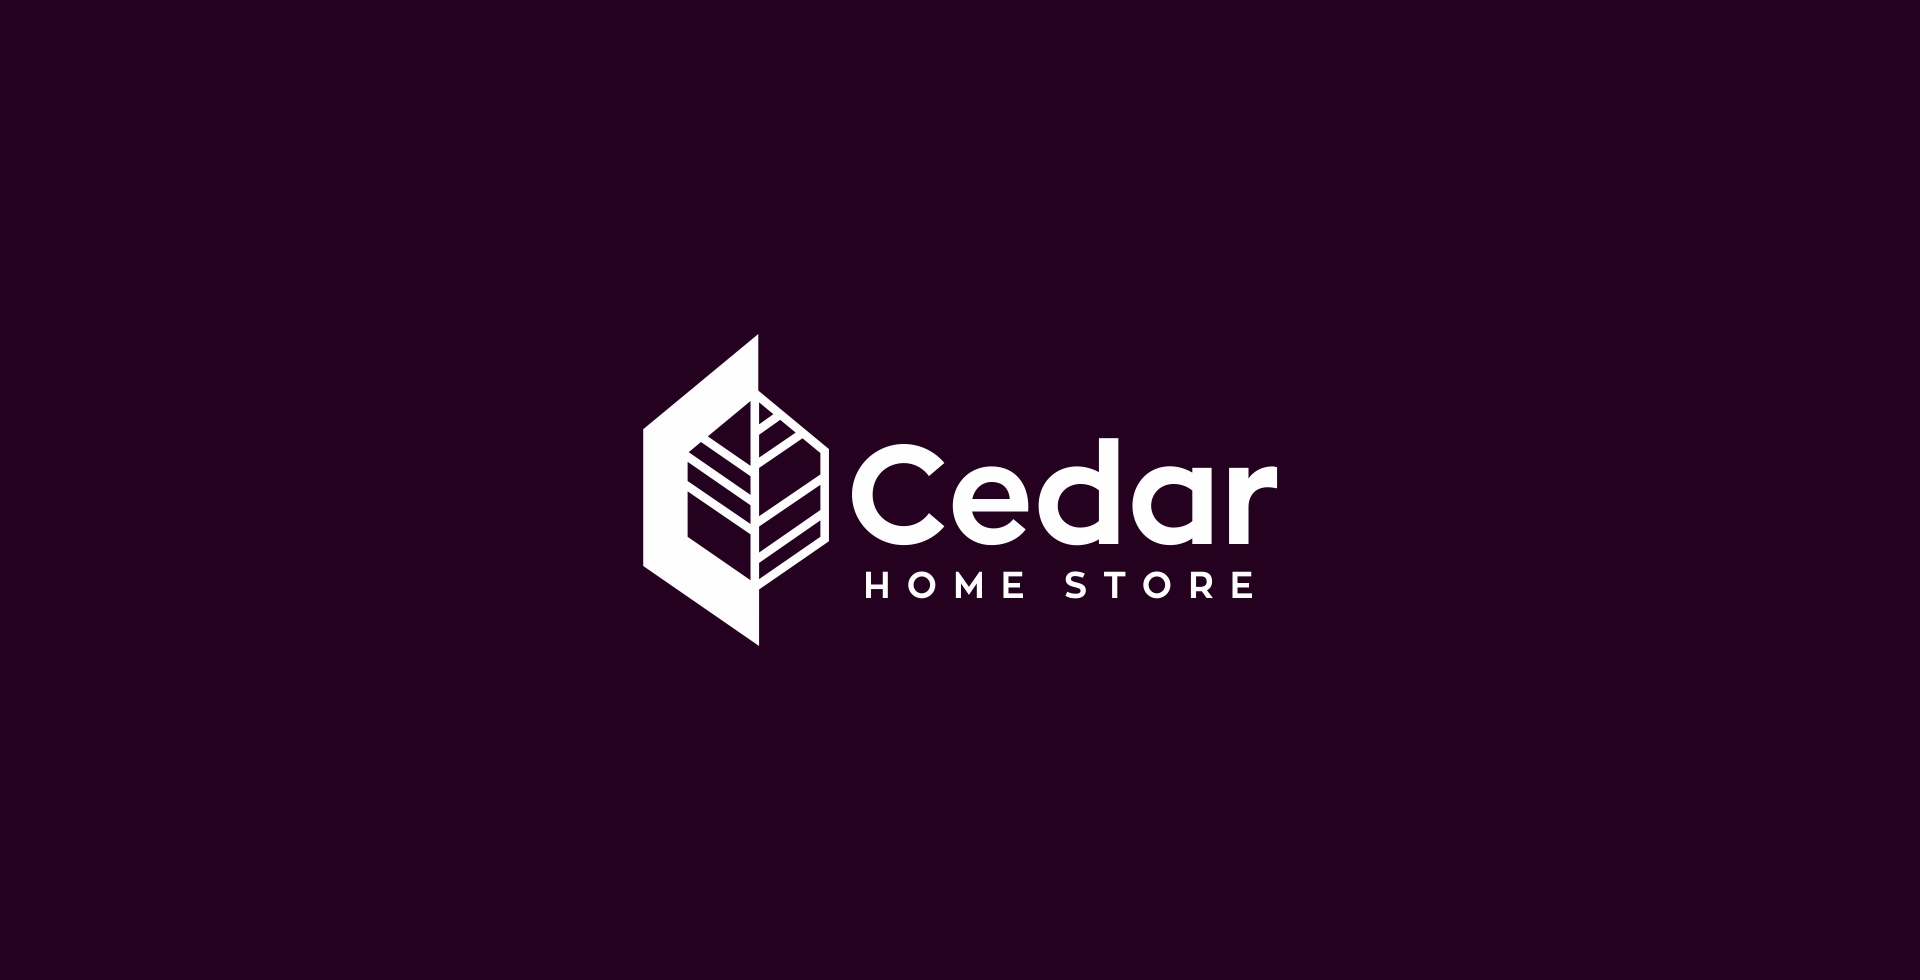 Cedar Home Store